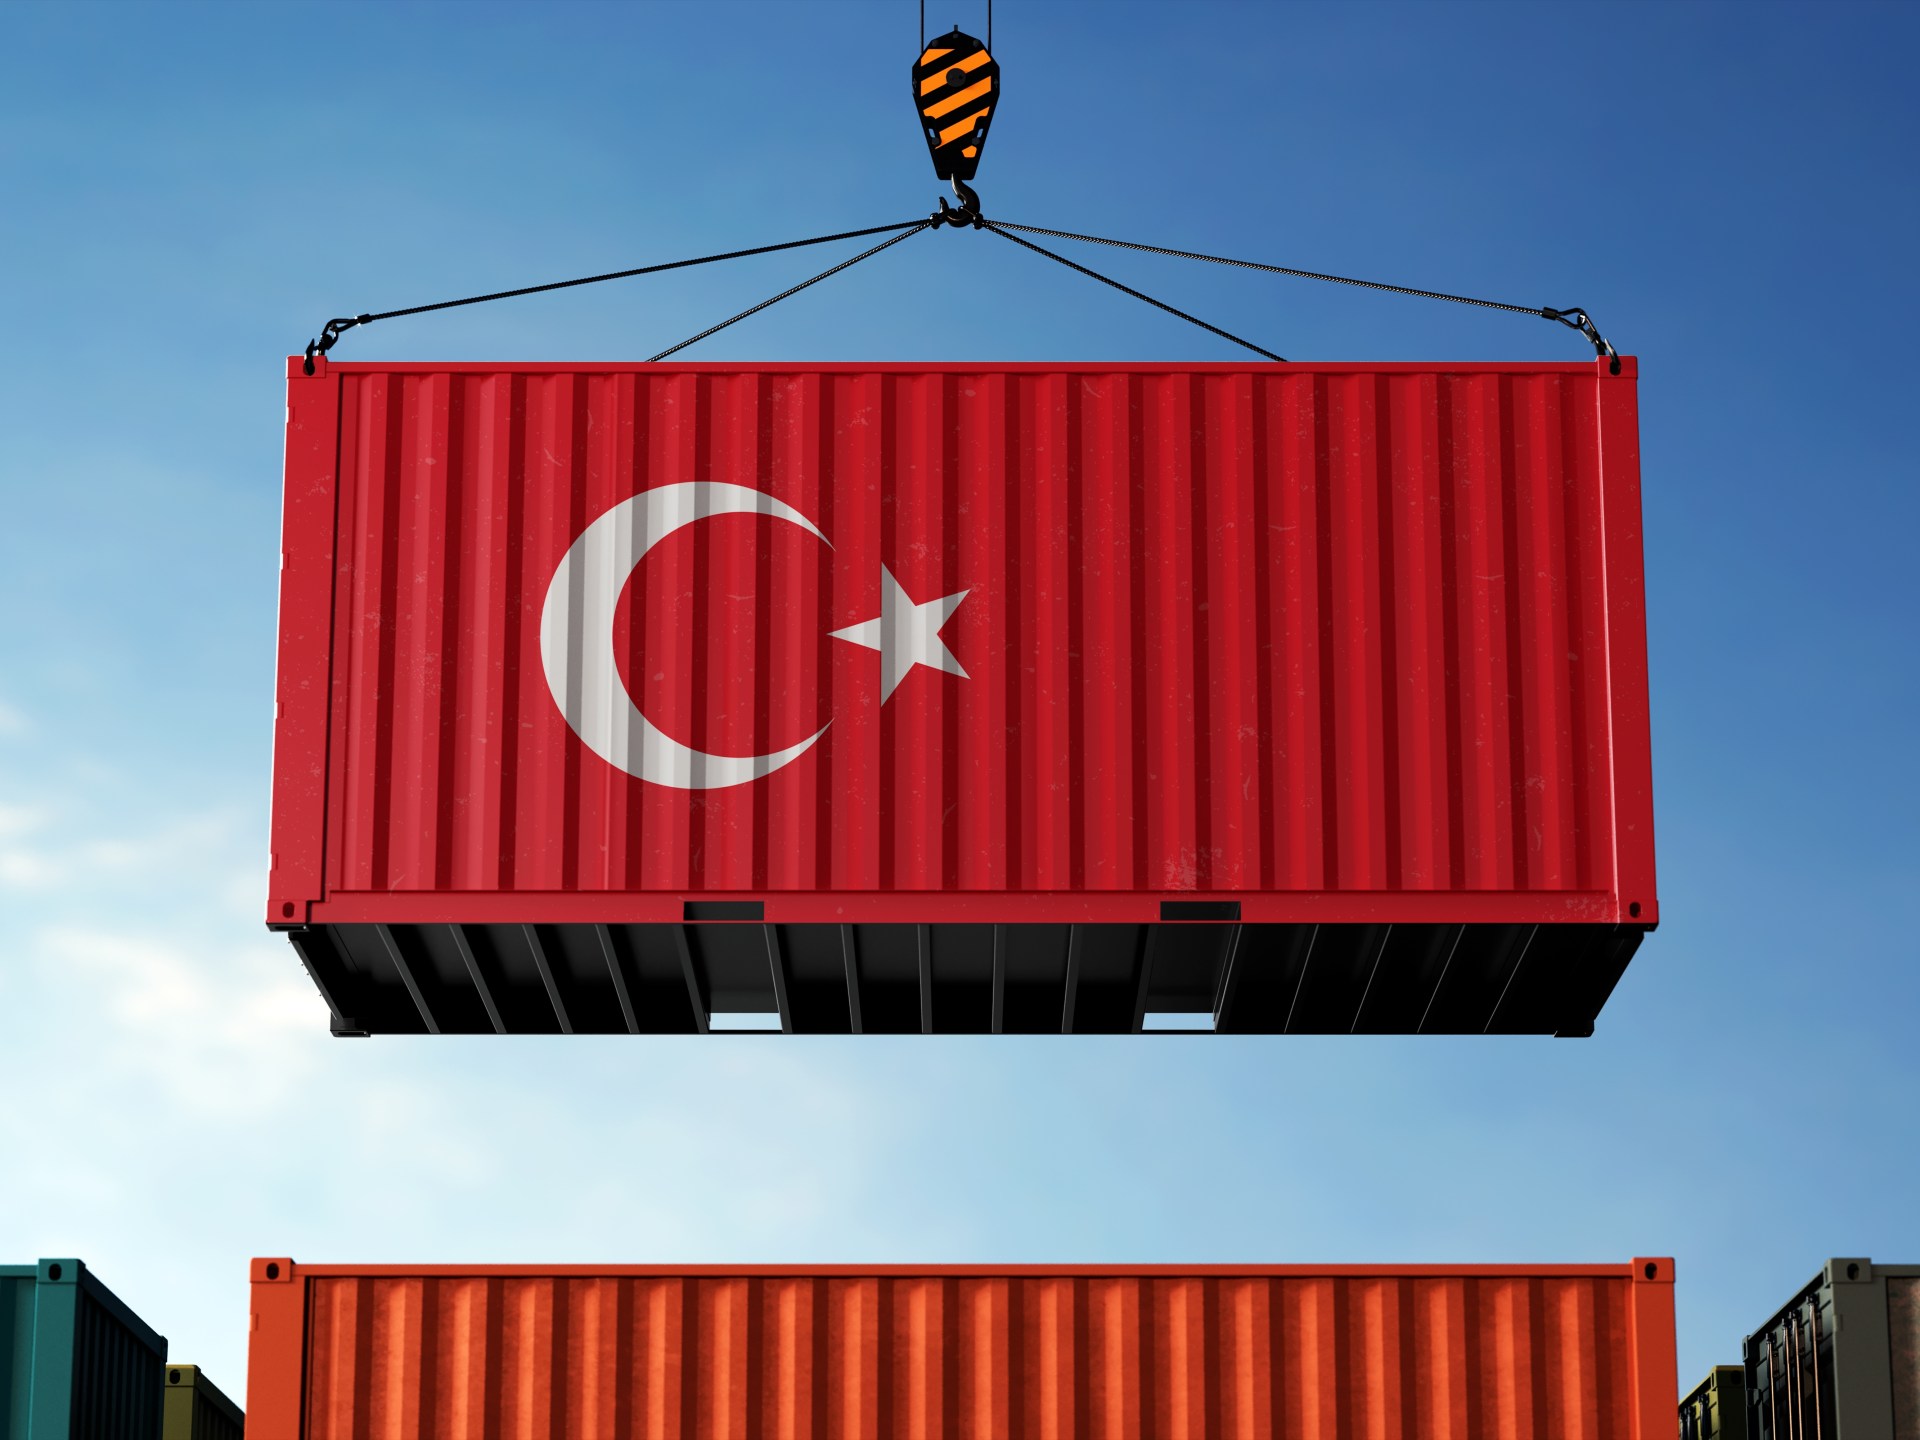 بعد قطع التجارة.. مستوردون إسرائيليون: استبدال منتجات تركيا له ثمن | اقتصاد – البوكس نيوز